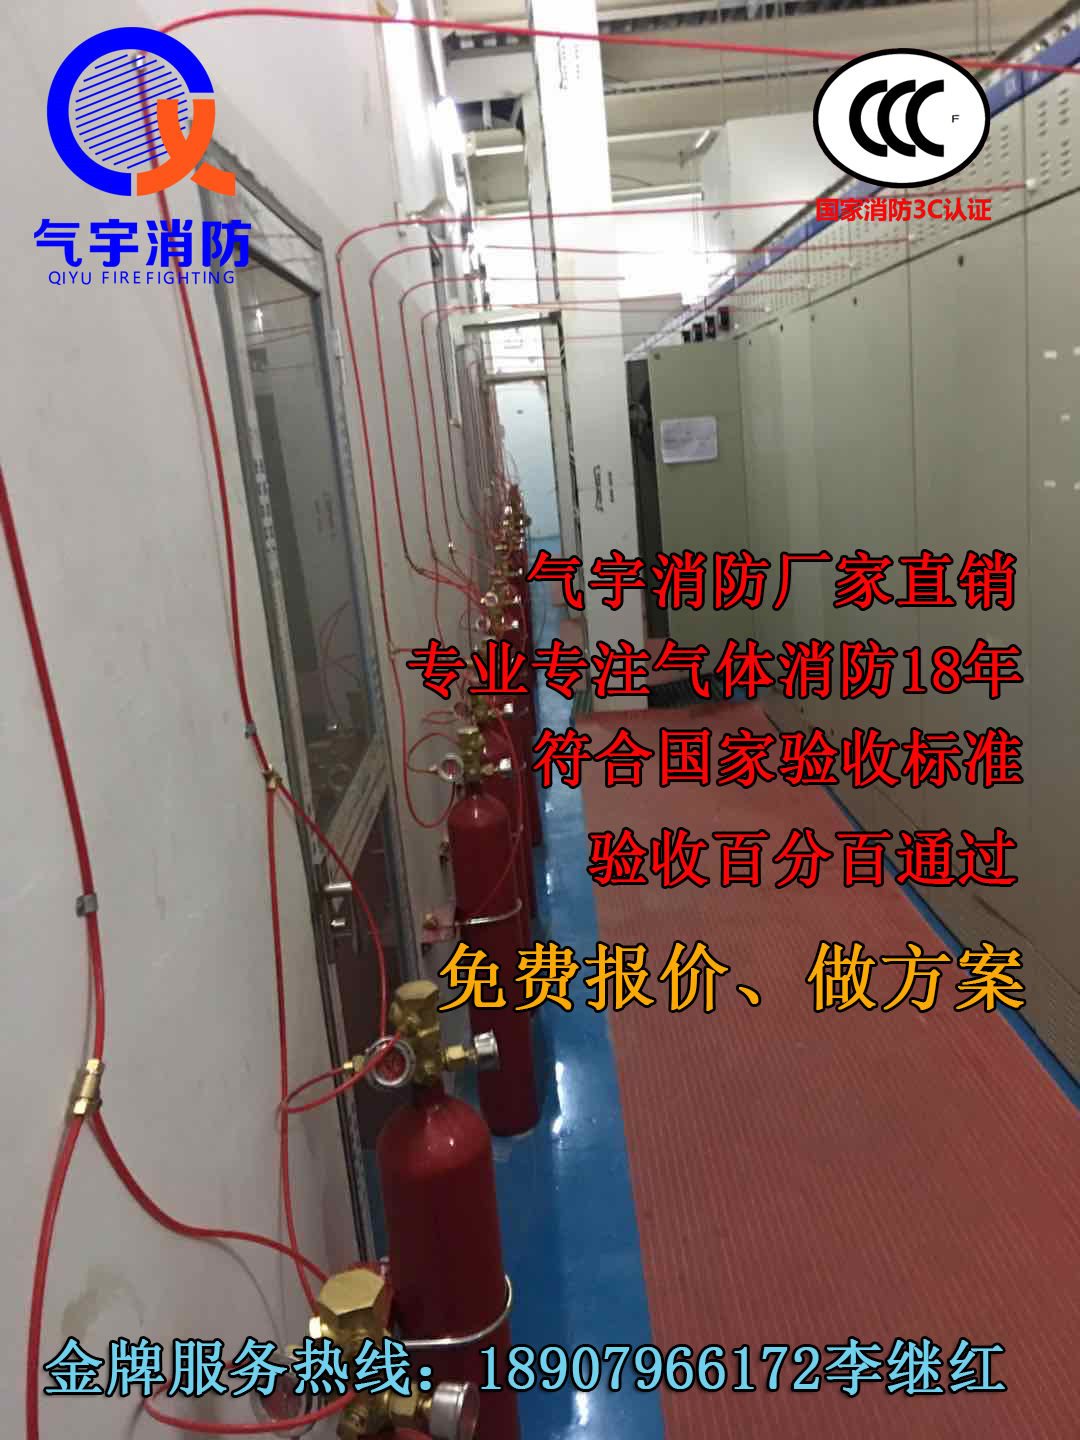 广东生产热销产品 七氟丙烷火探管感温自动灭火装置 广州气宇有检验报告图片